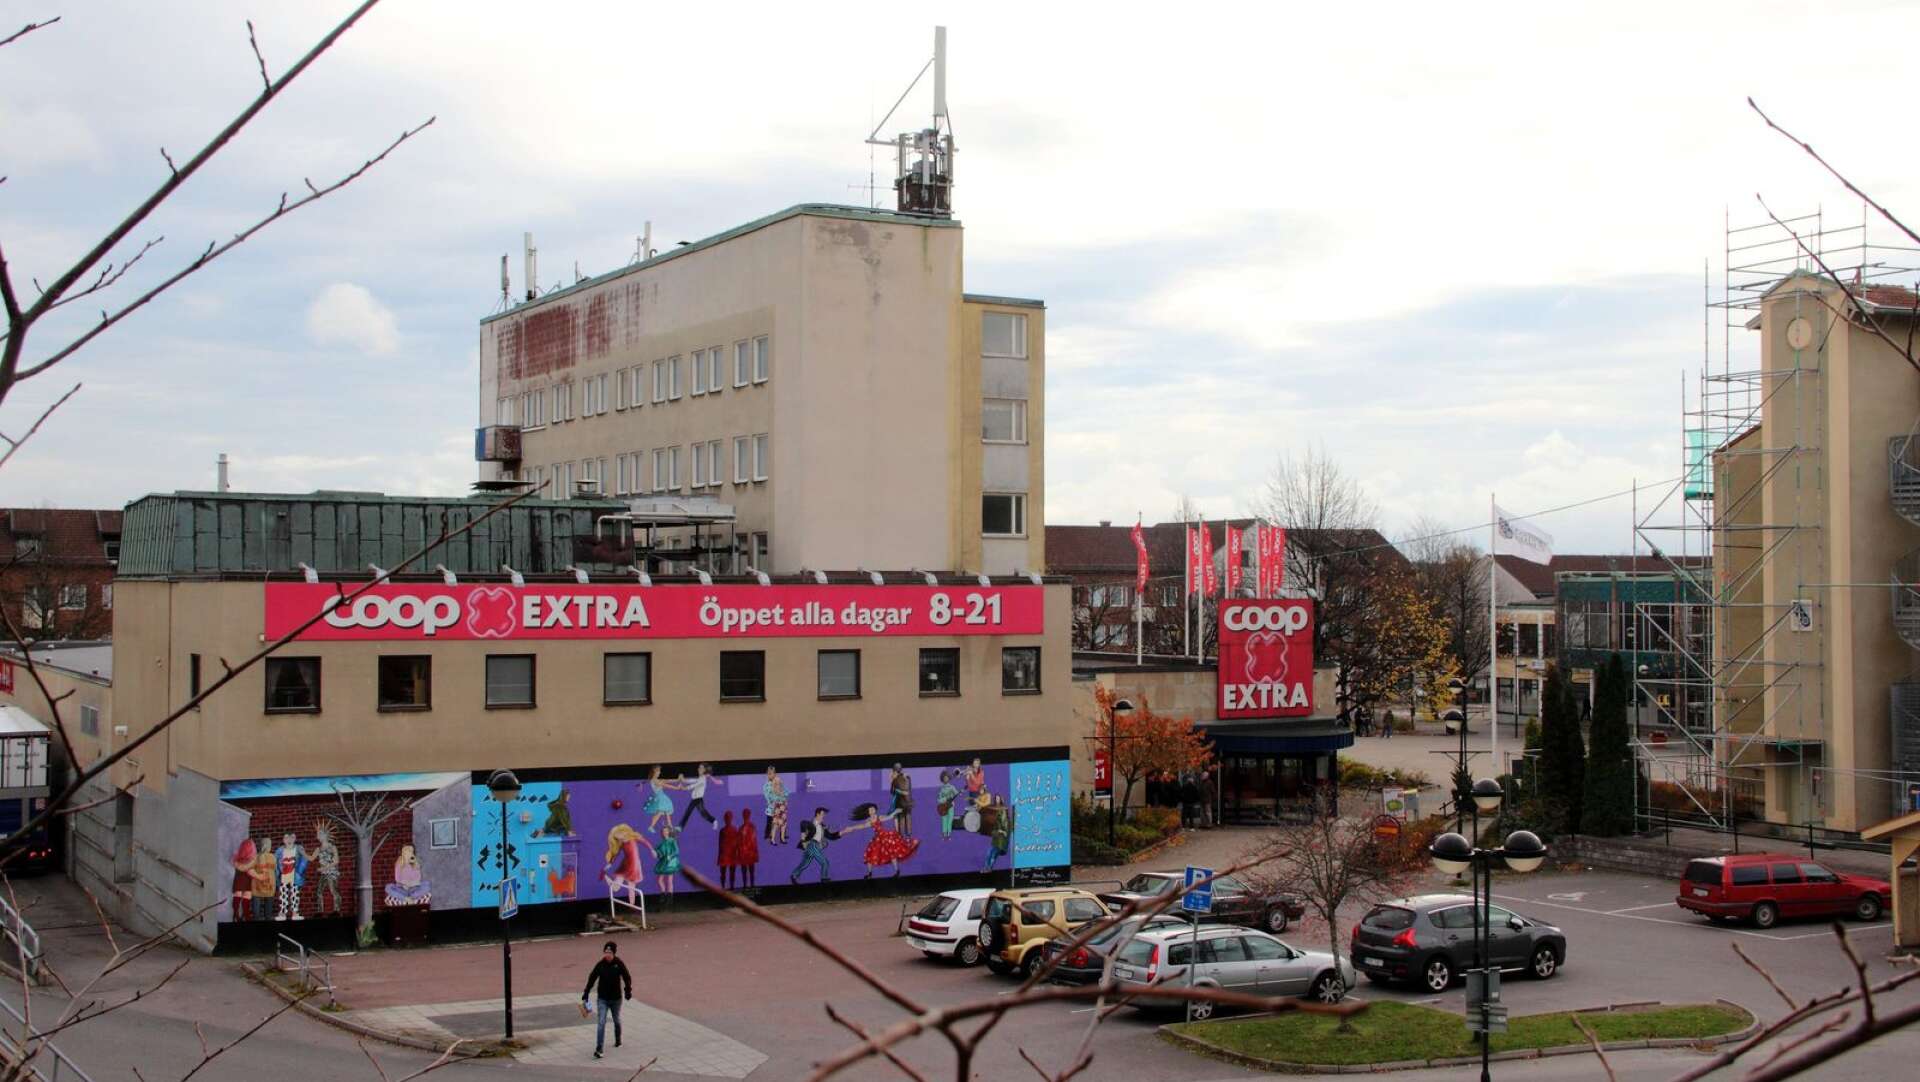 En invånare vill att målningarna bakom Coophuset ska ersättas med mindre kontroversiell konst och att skolorna ska få klotterplank.